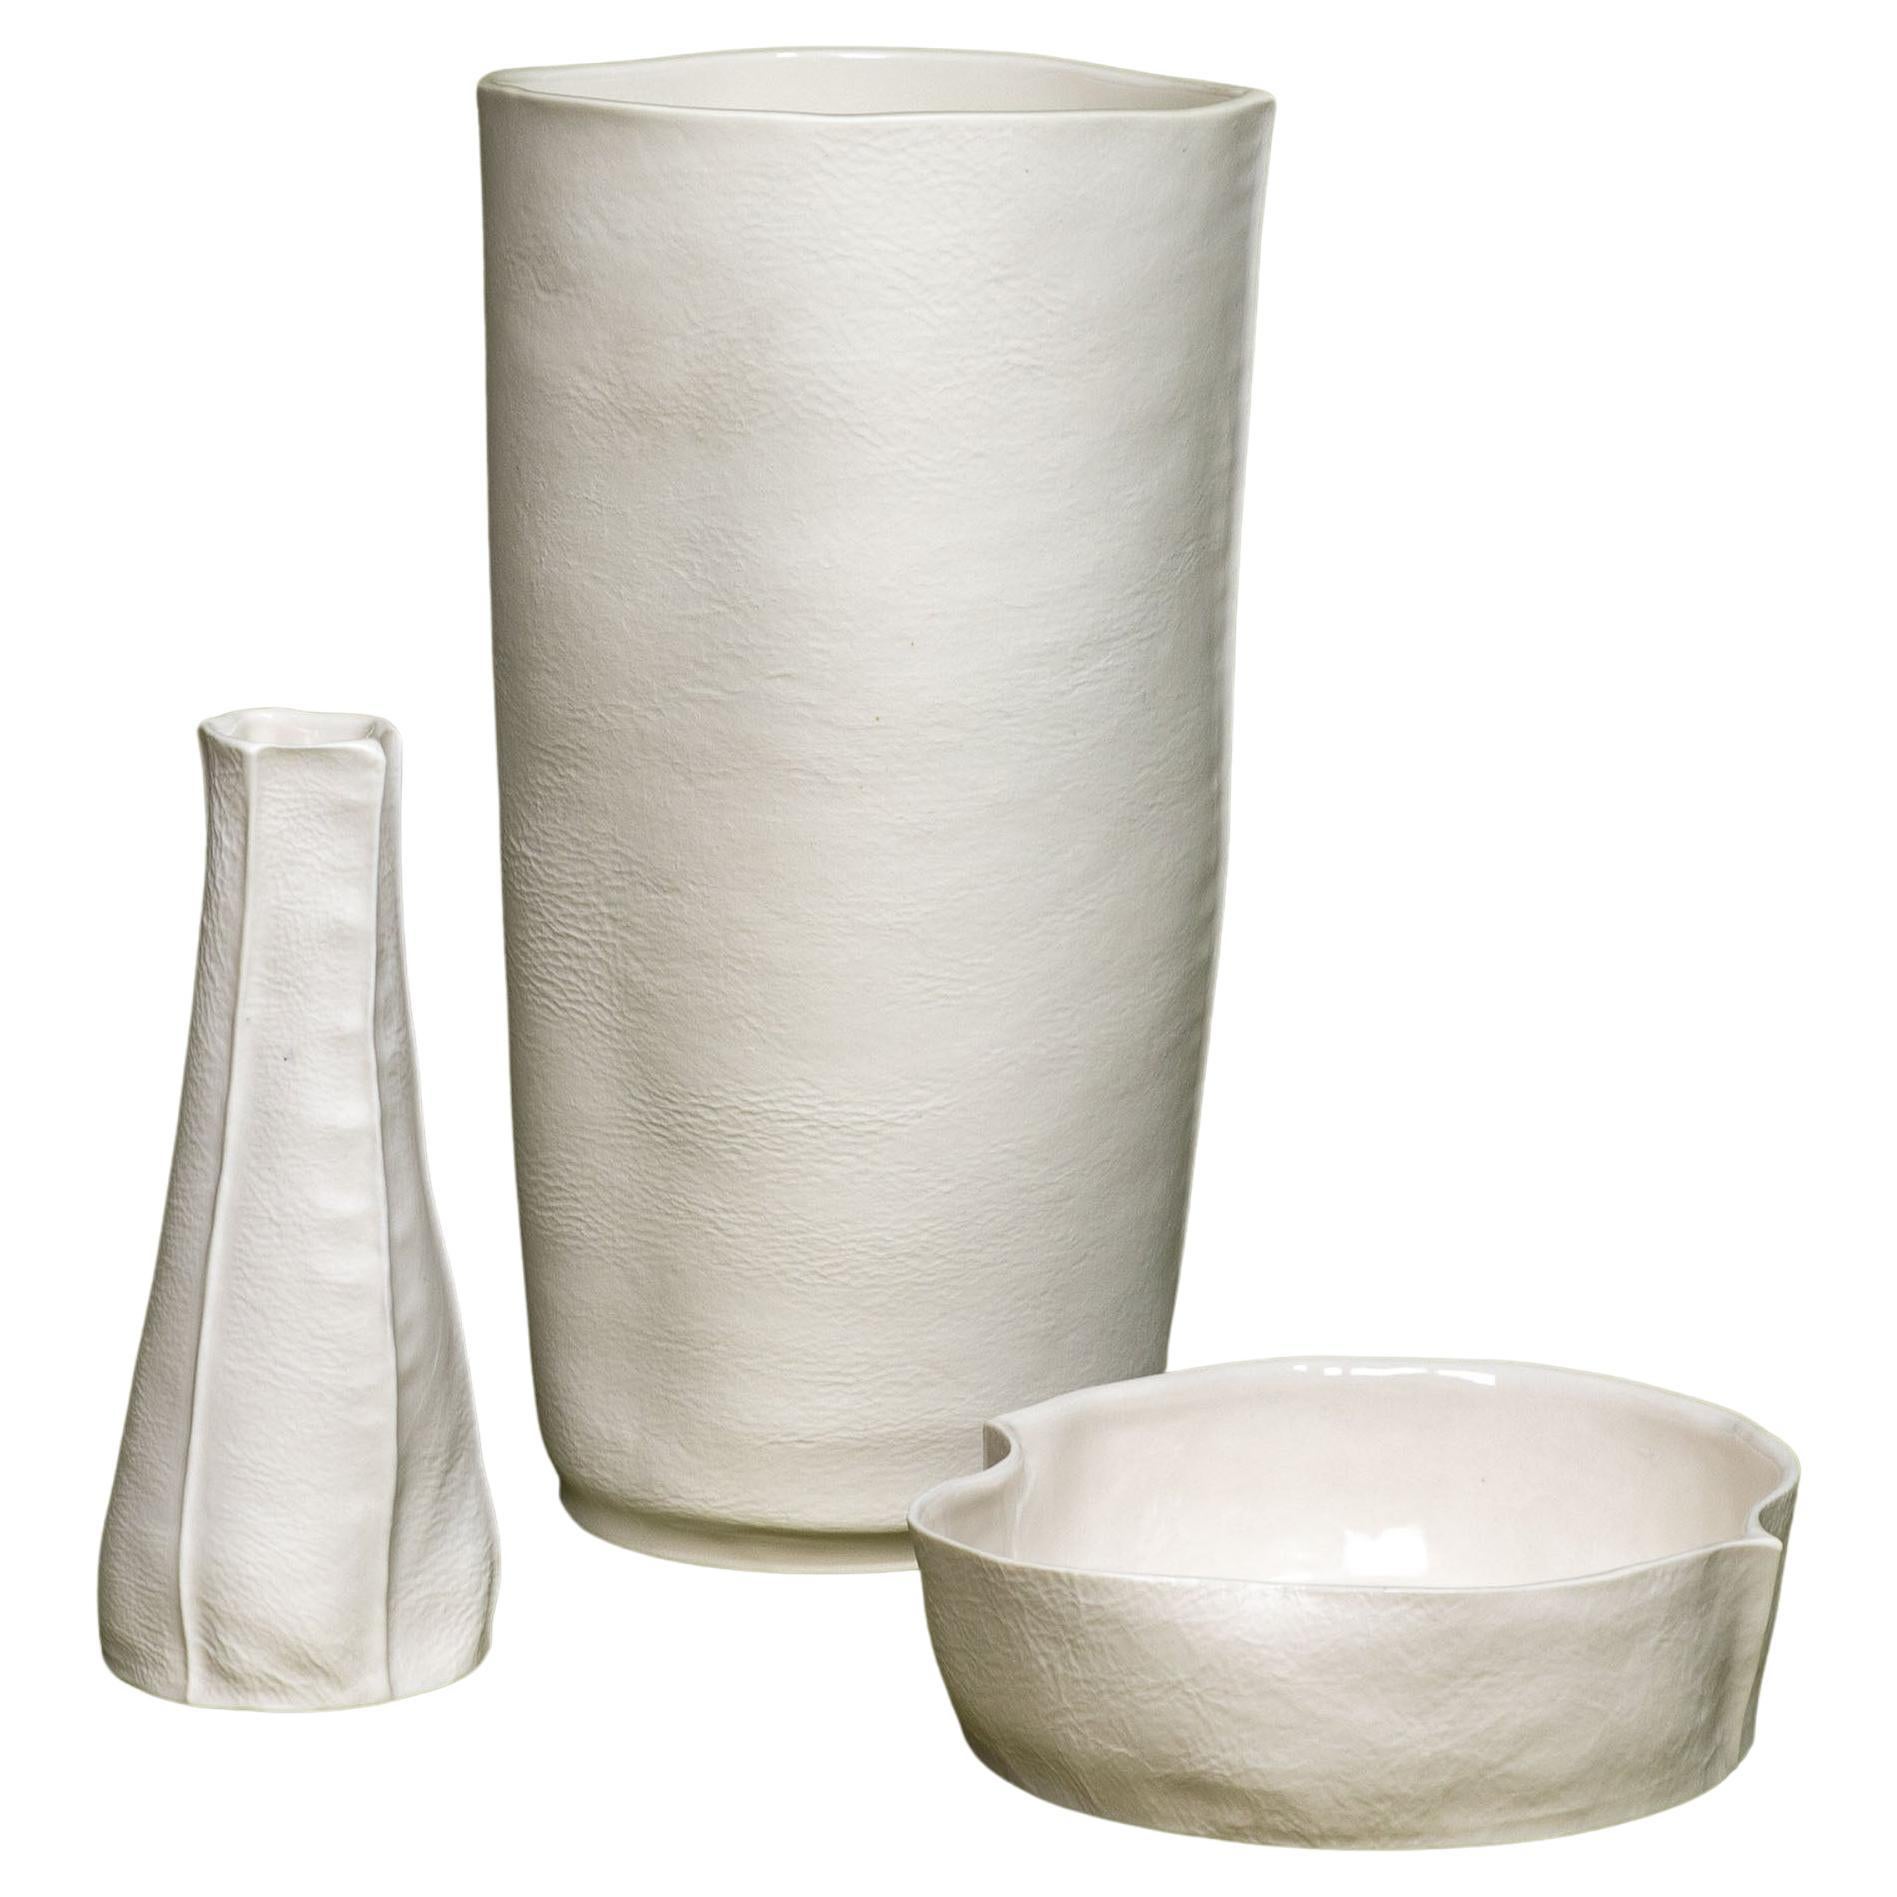 En stock, ensemble de 3 vases et plat en céramique blanche Luft Tanaka, porcelaine, organique